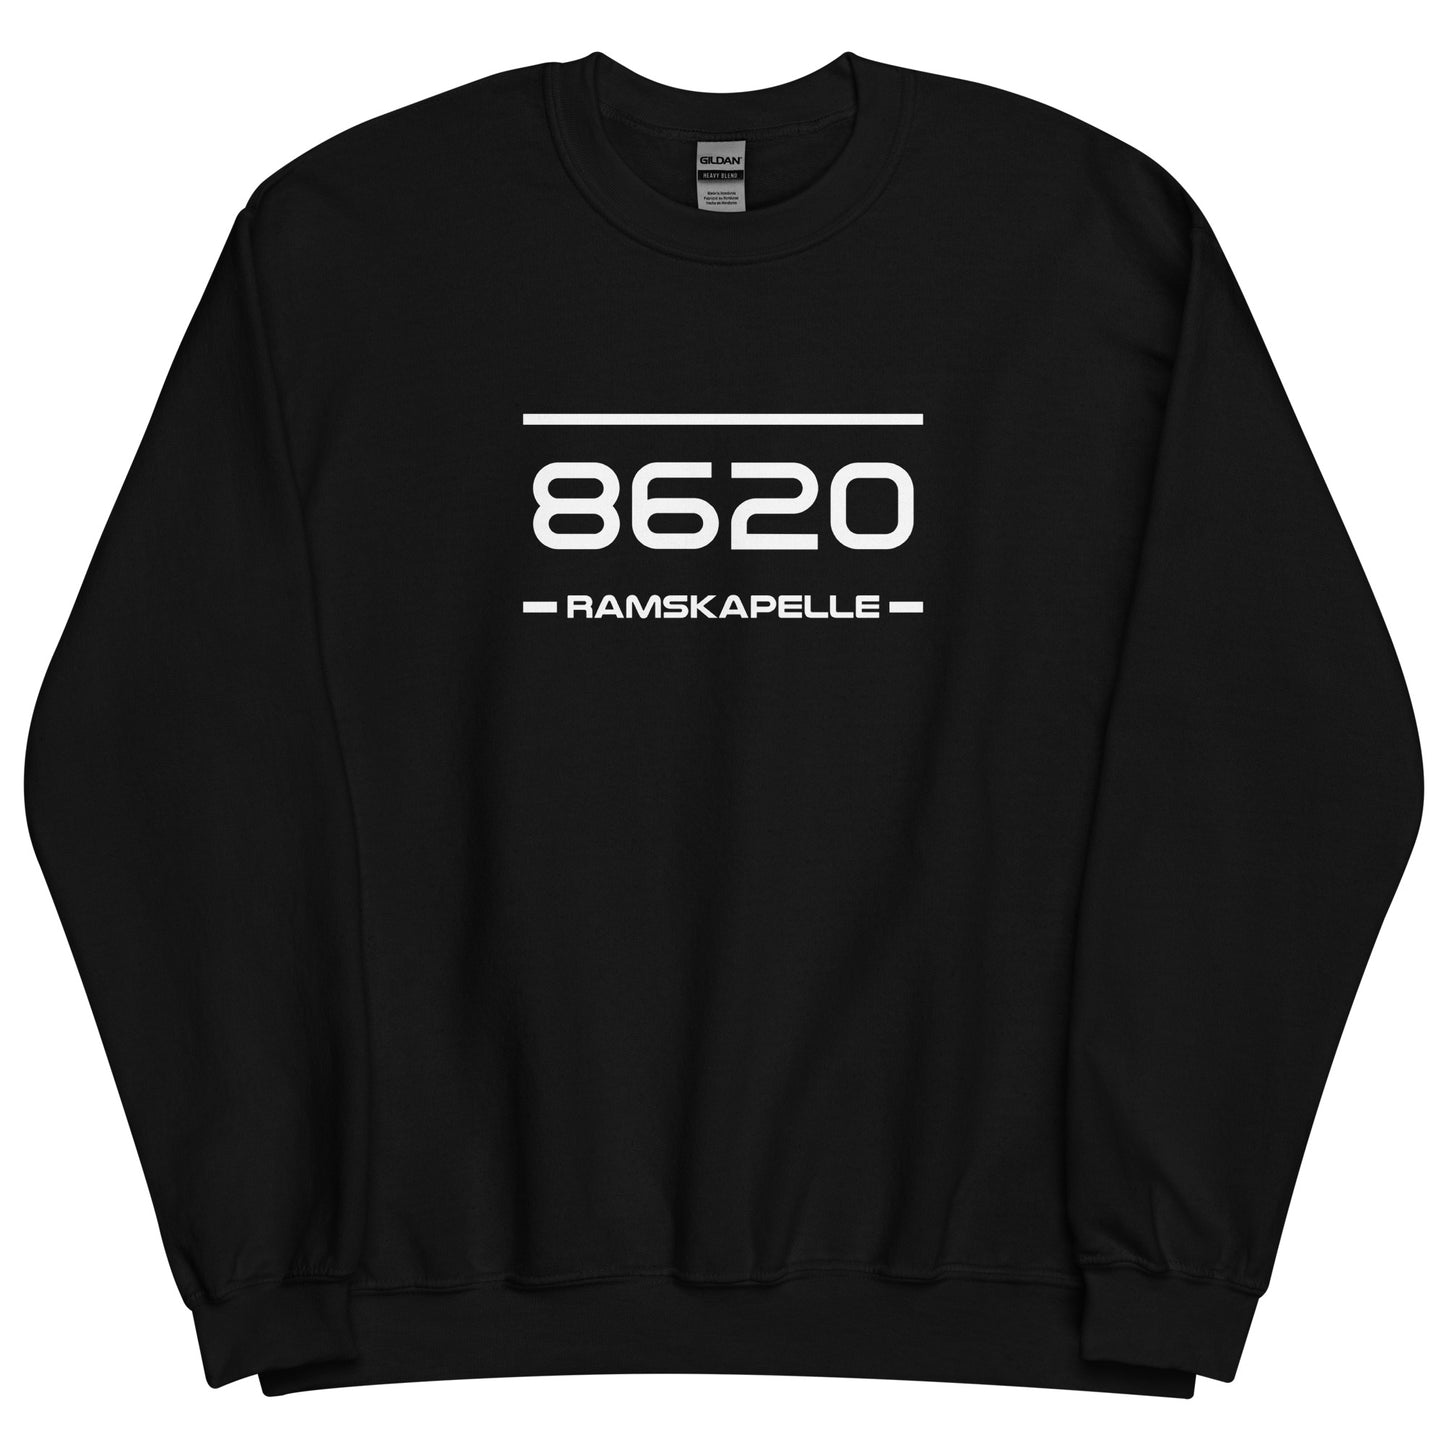 Sweater - 8620 - Ramskapelle (M/V)